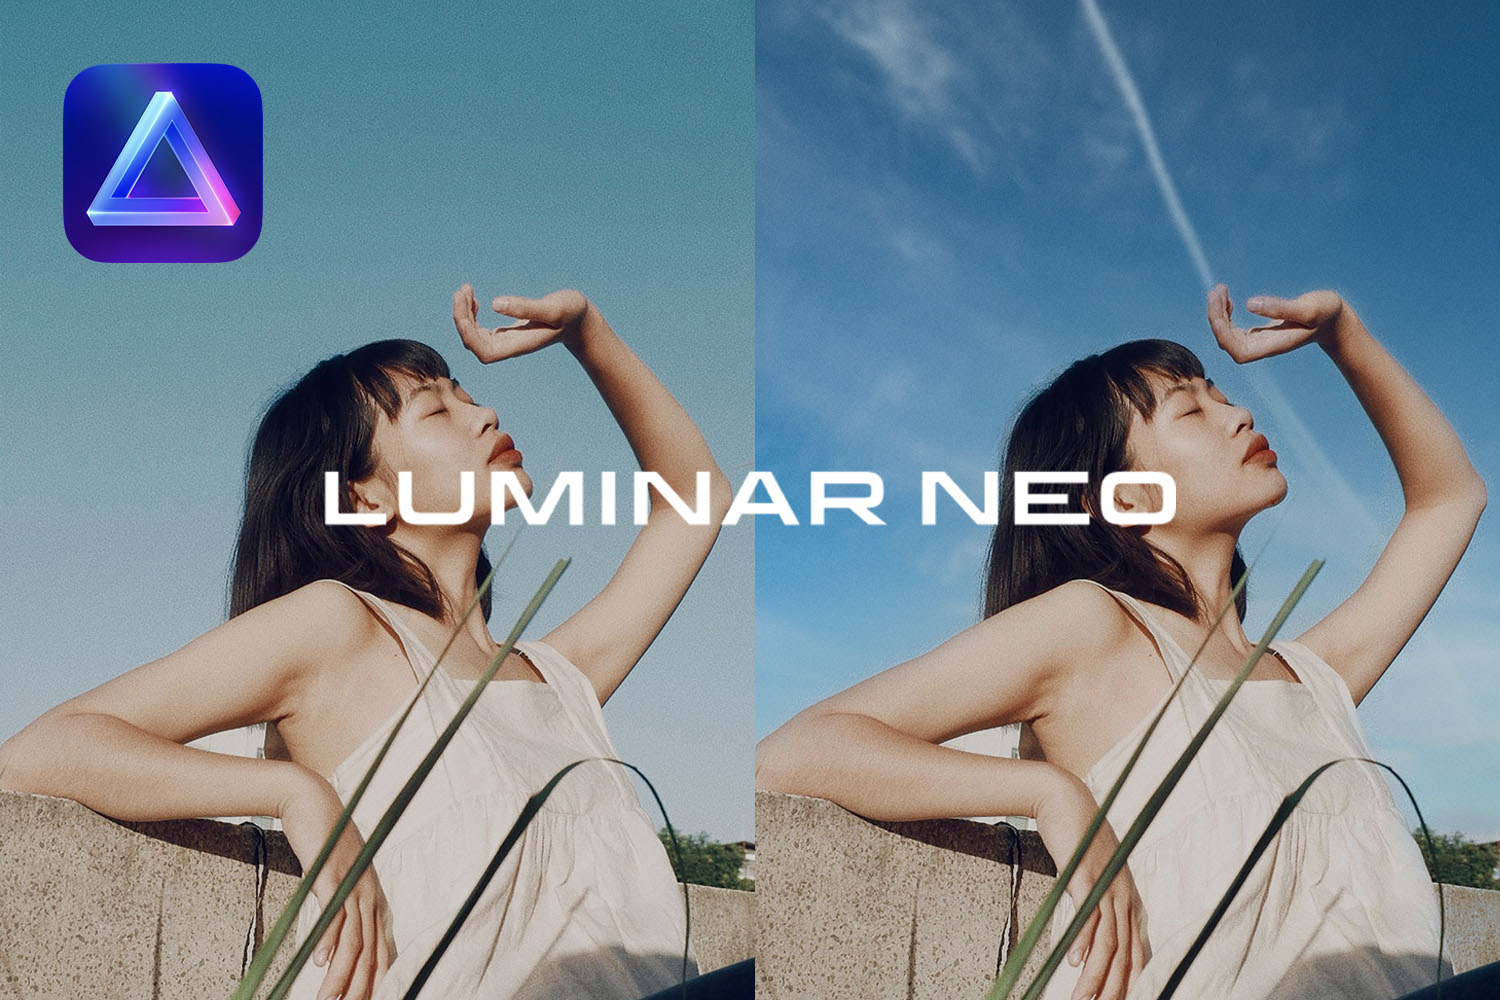 「Luminar Neo」のスカイAI機能で簡単に空を自在に入れ替えて被写体と馴染ませる方法